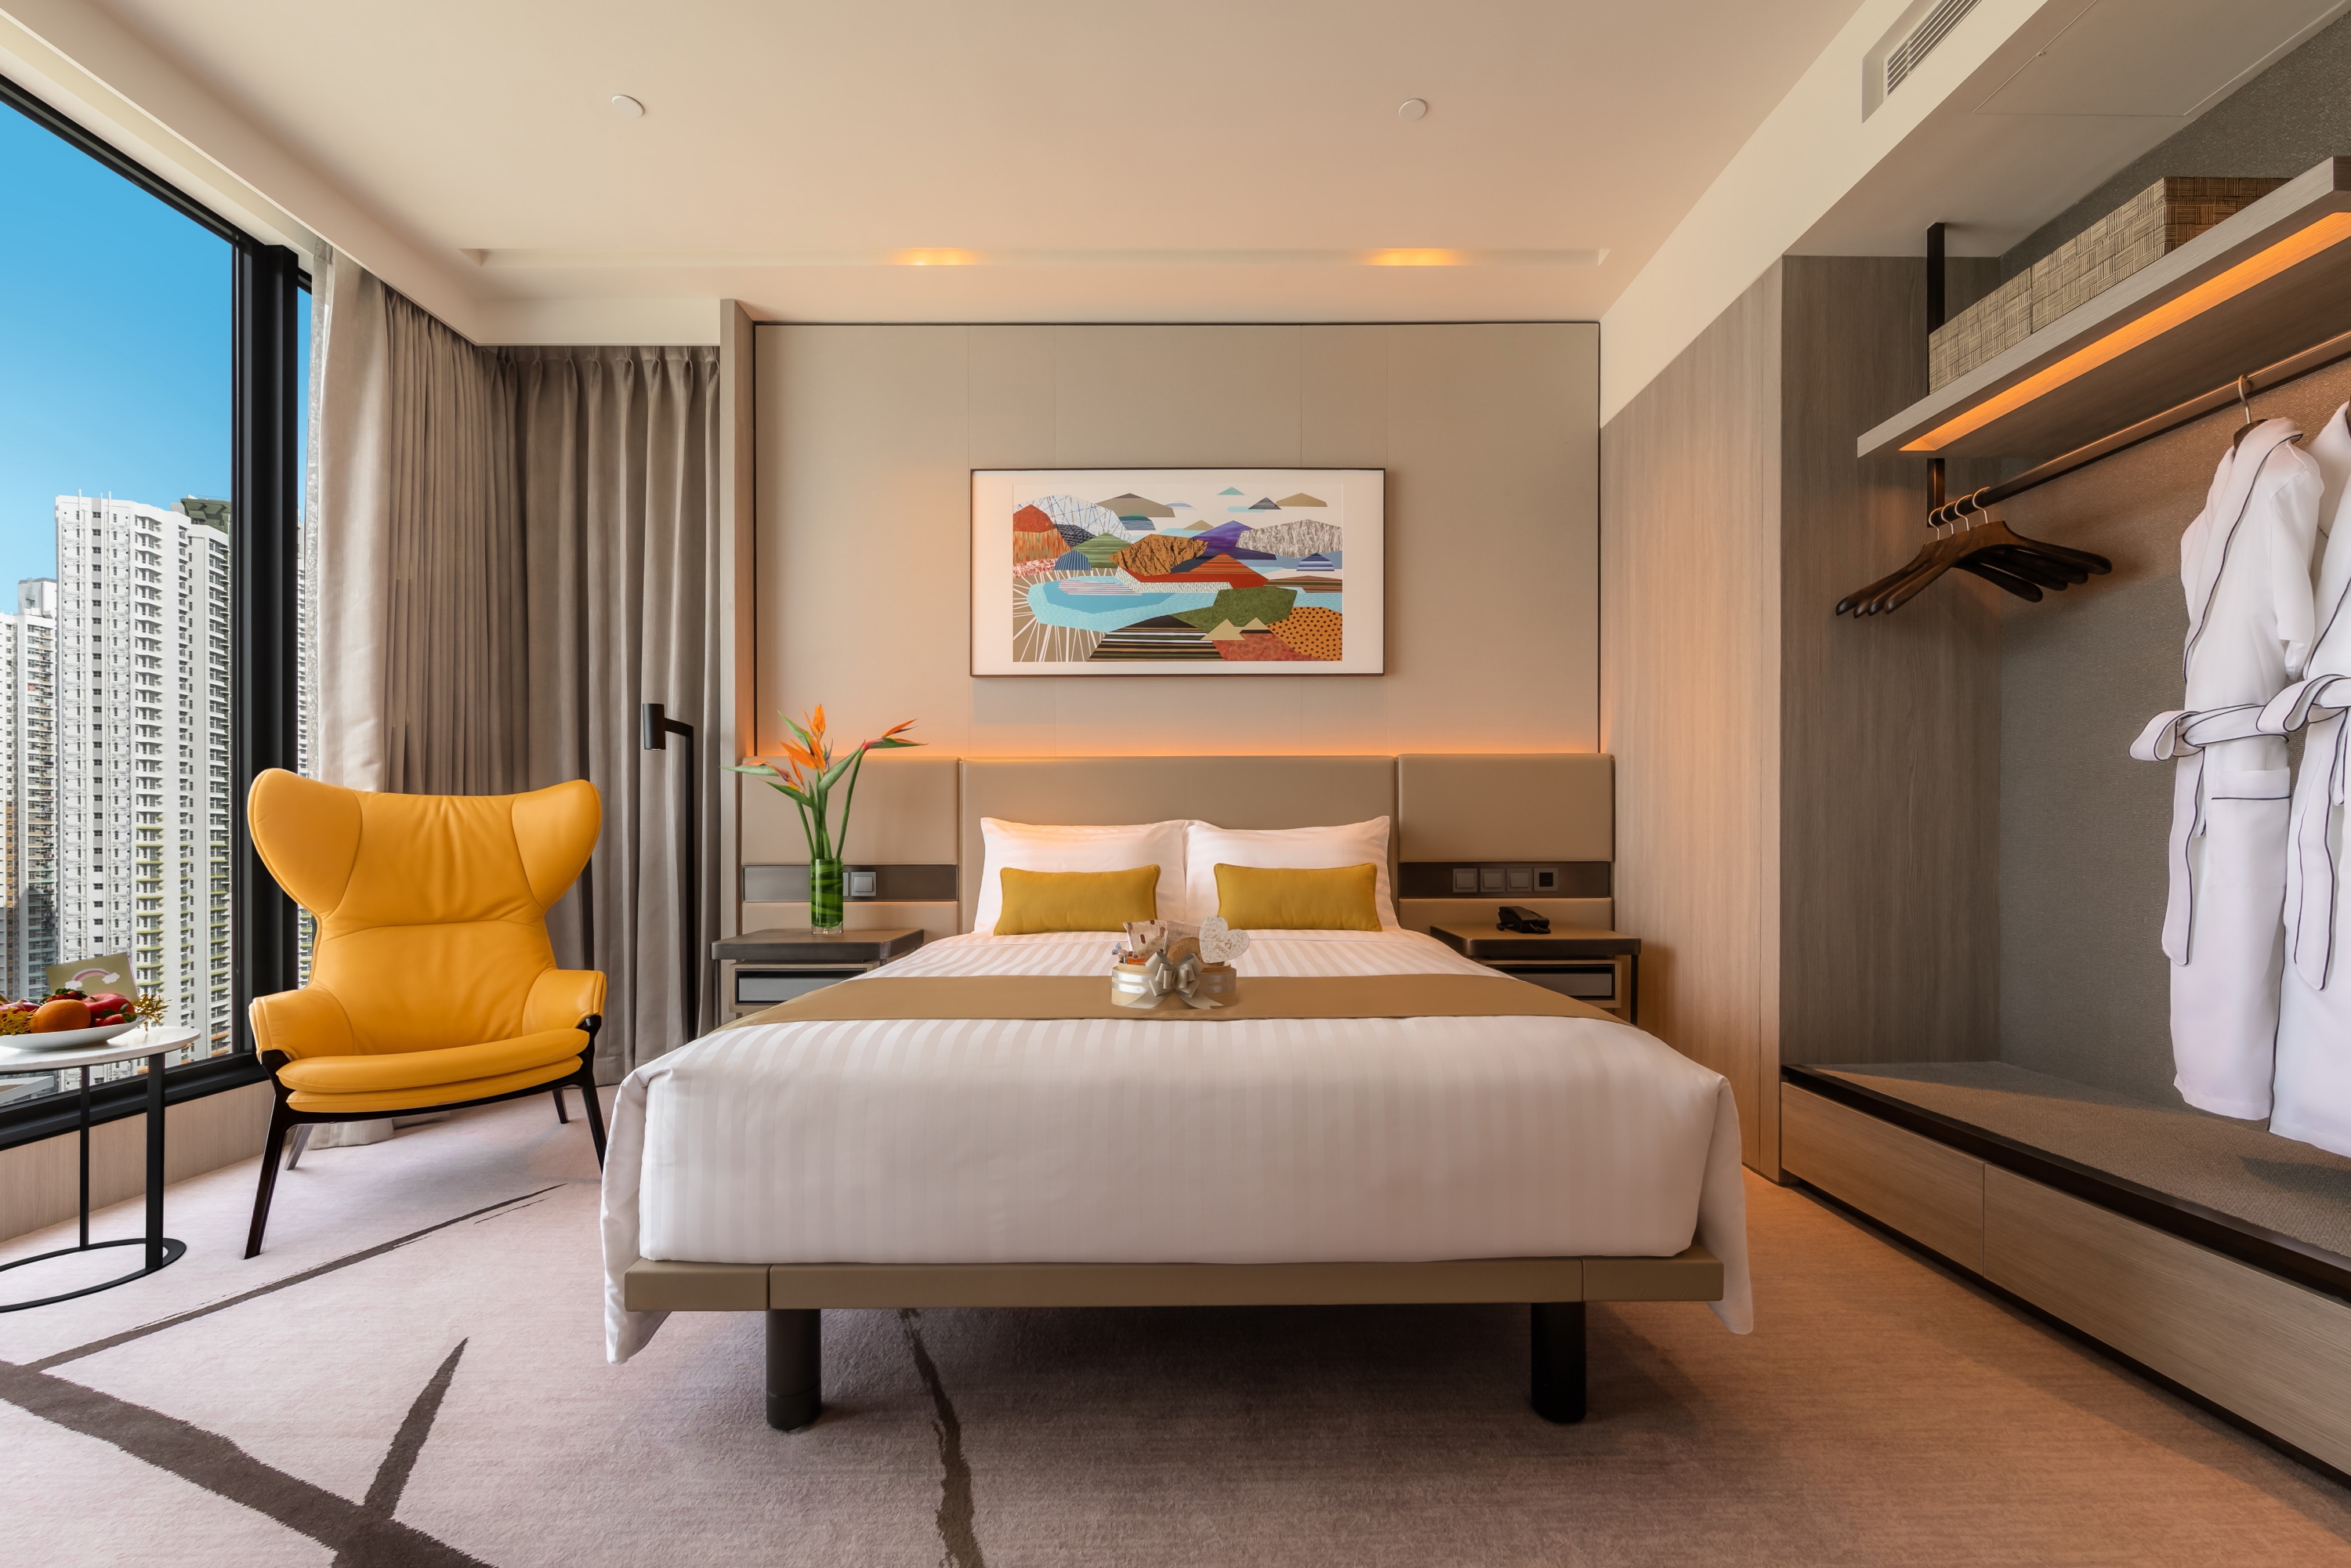 Standard Room at Alva Hotel by Royal in Shatin, Hong Kong. Click to enlarge.